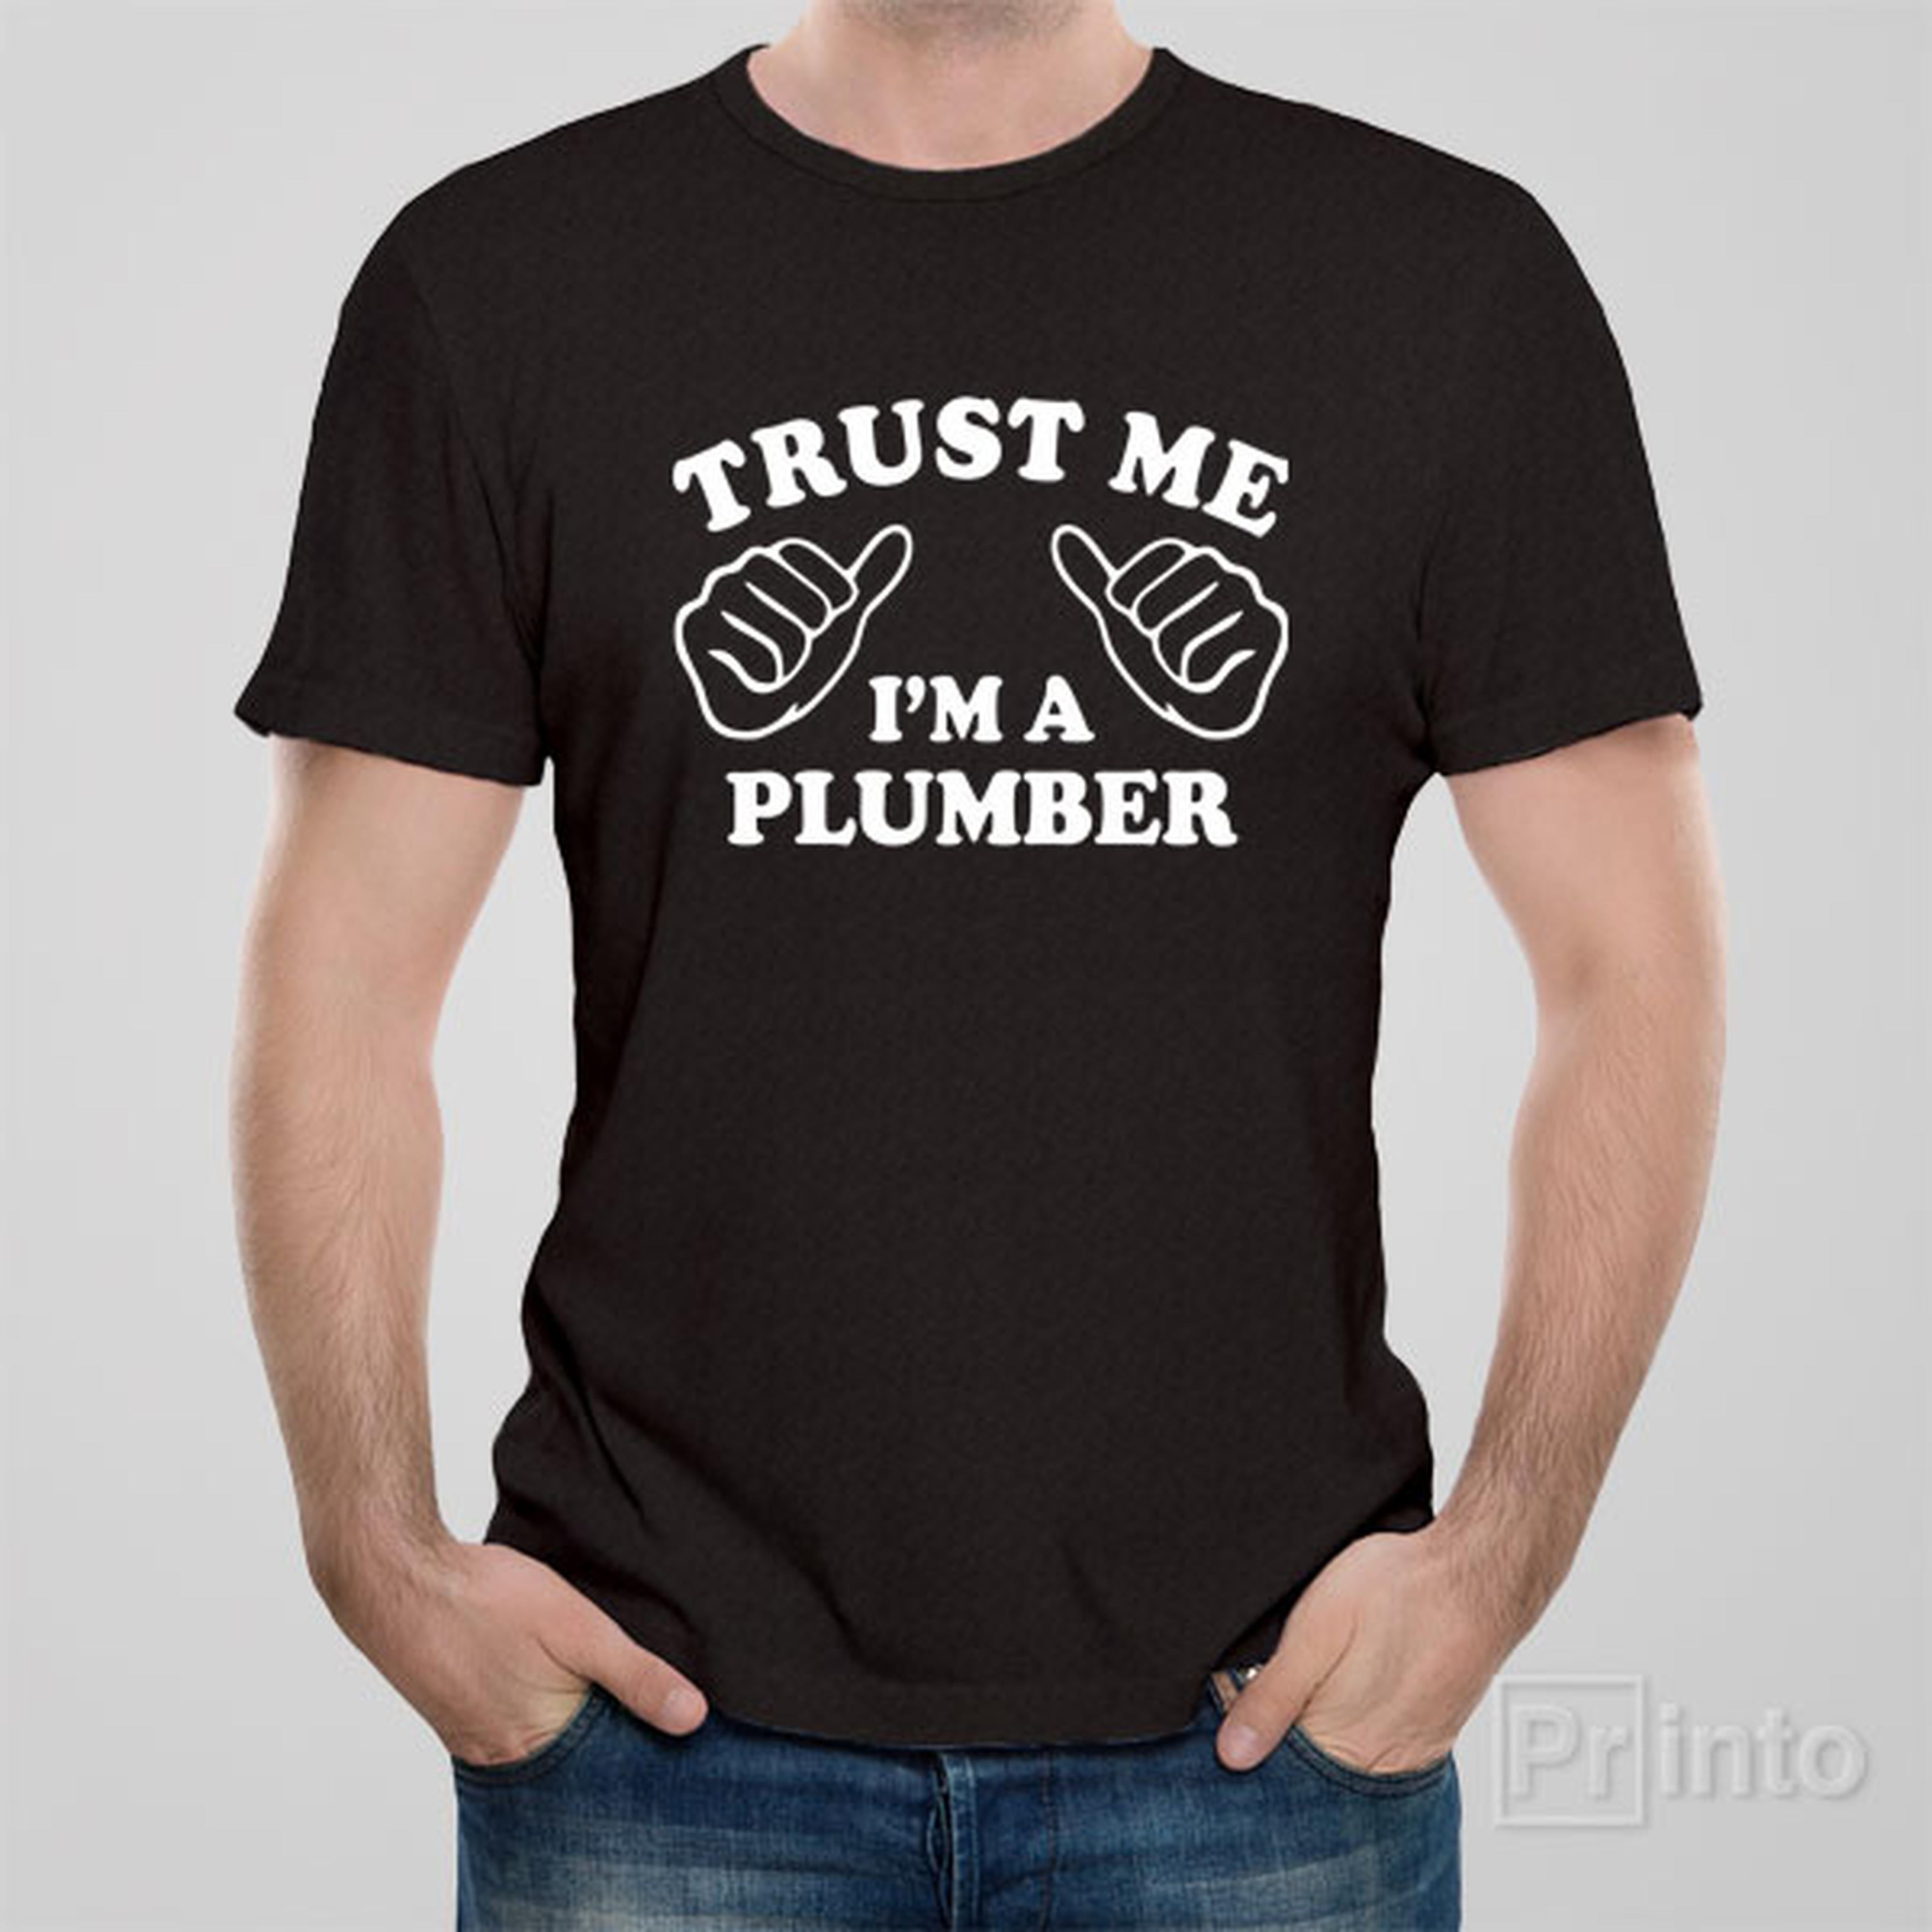 trust-me-i-am-a-plumber-t-shirt